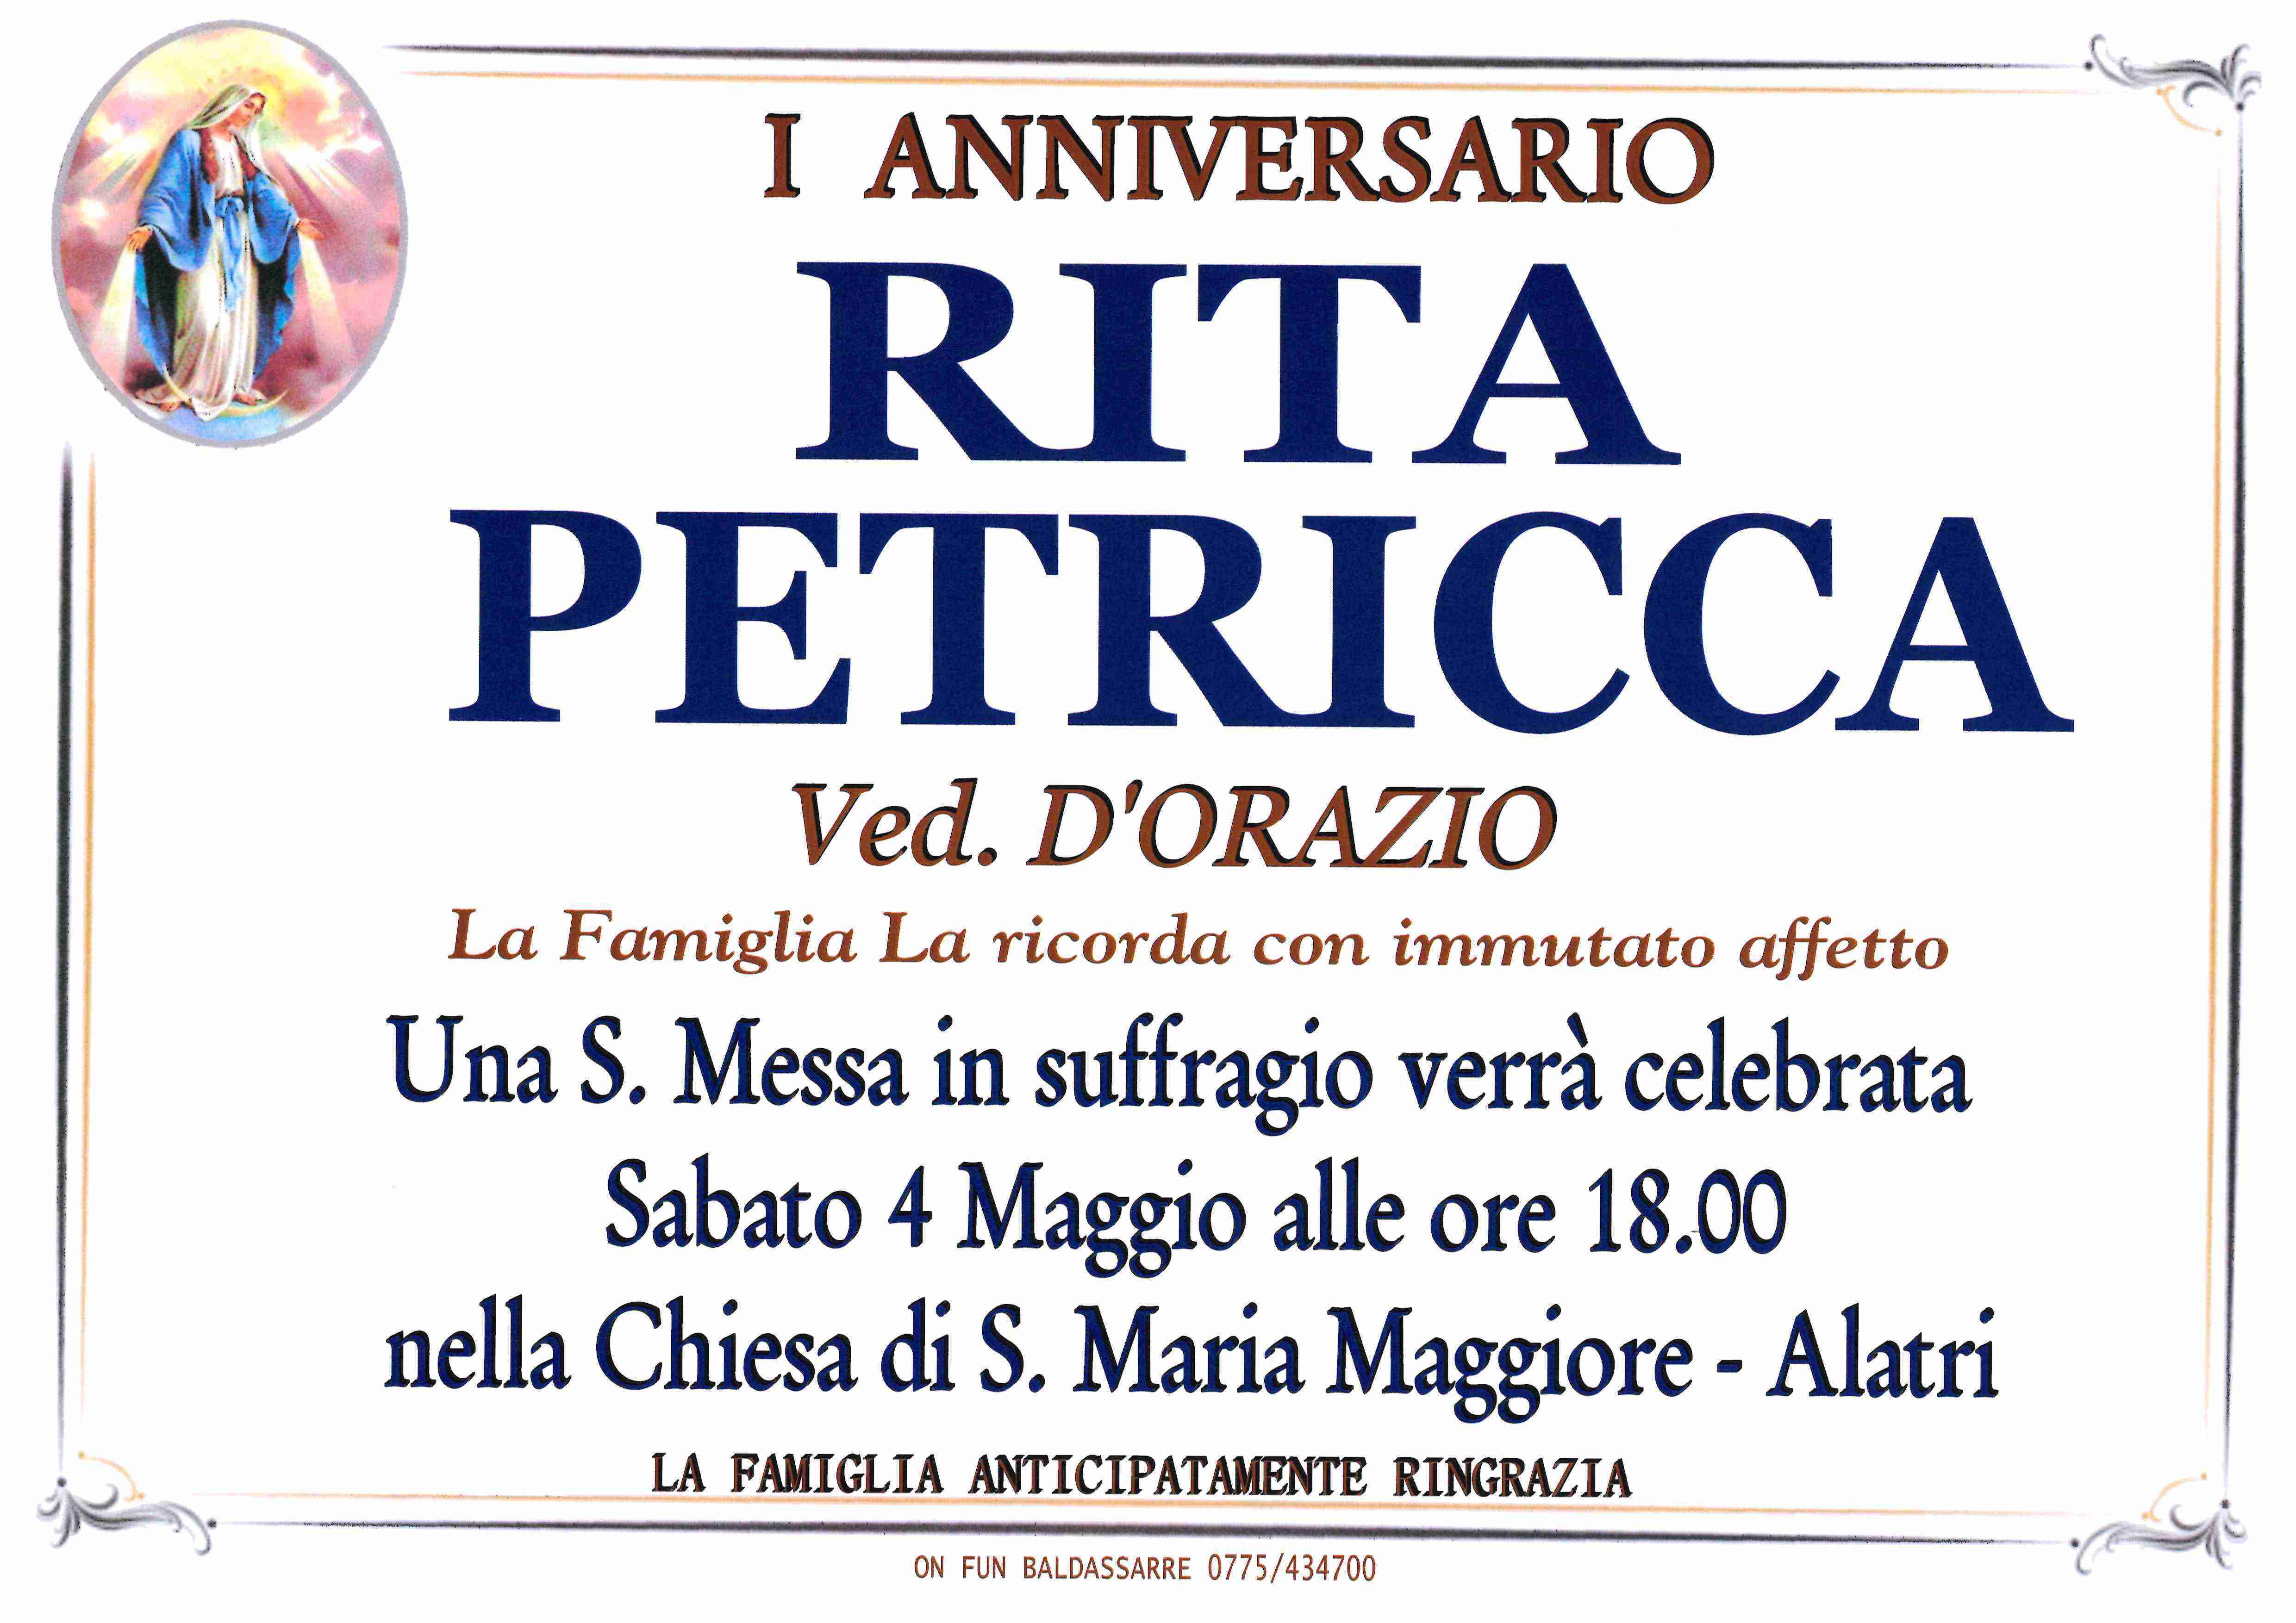 Rita   Petricca